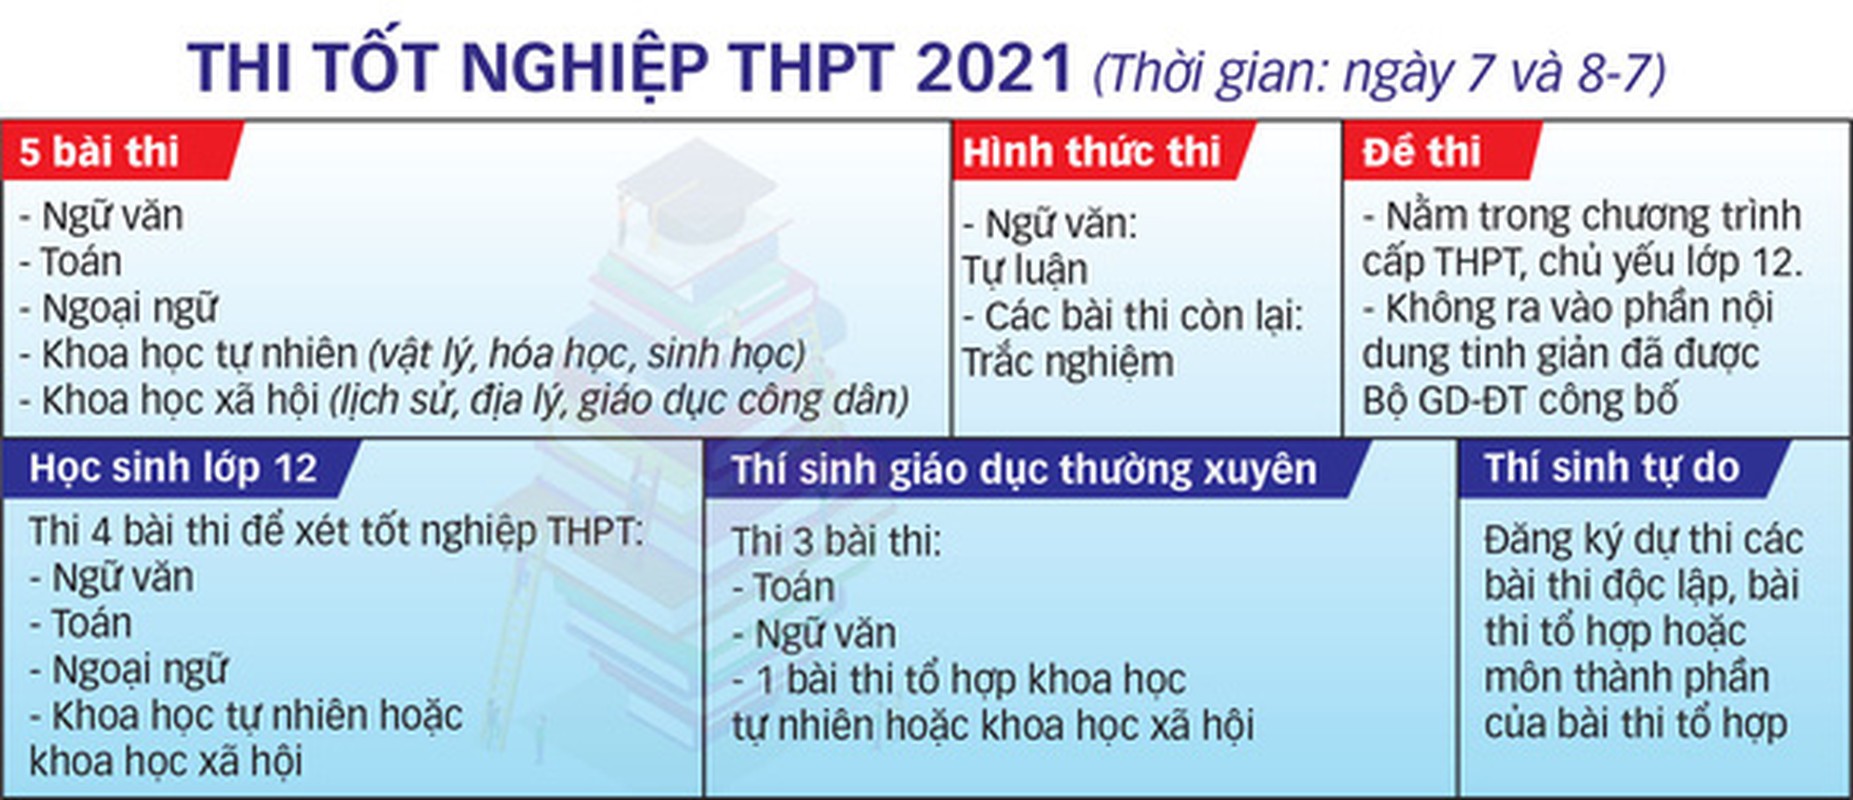 Cong bo lich thi tot nghiep THPT 2021 va nhung quy che can chu y-Hinh-6